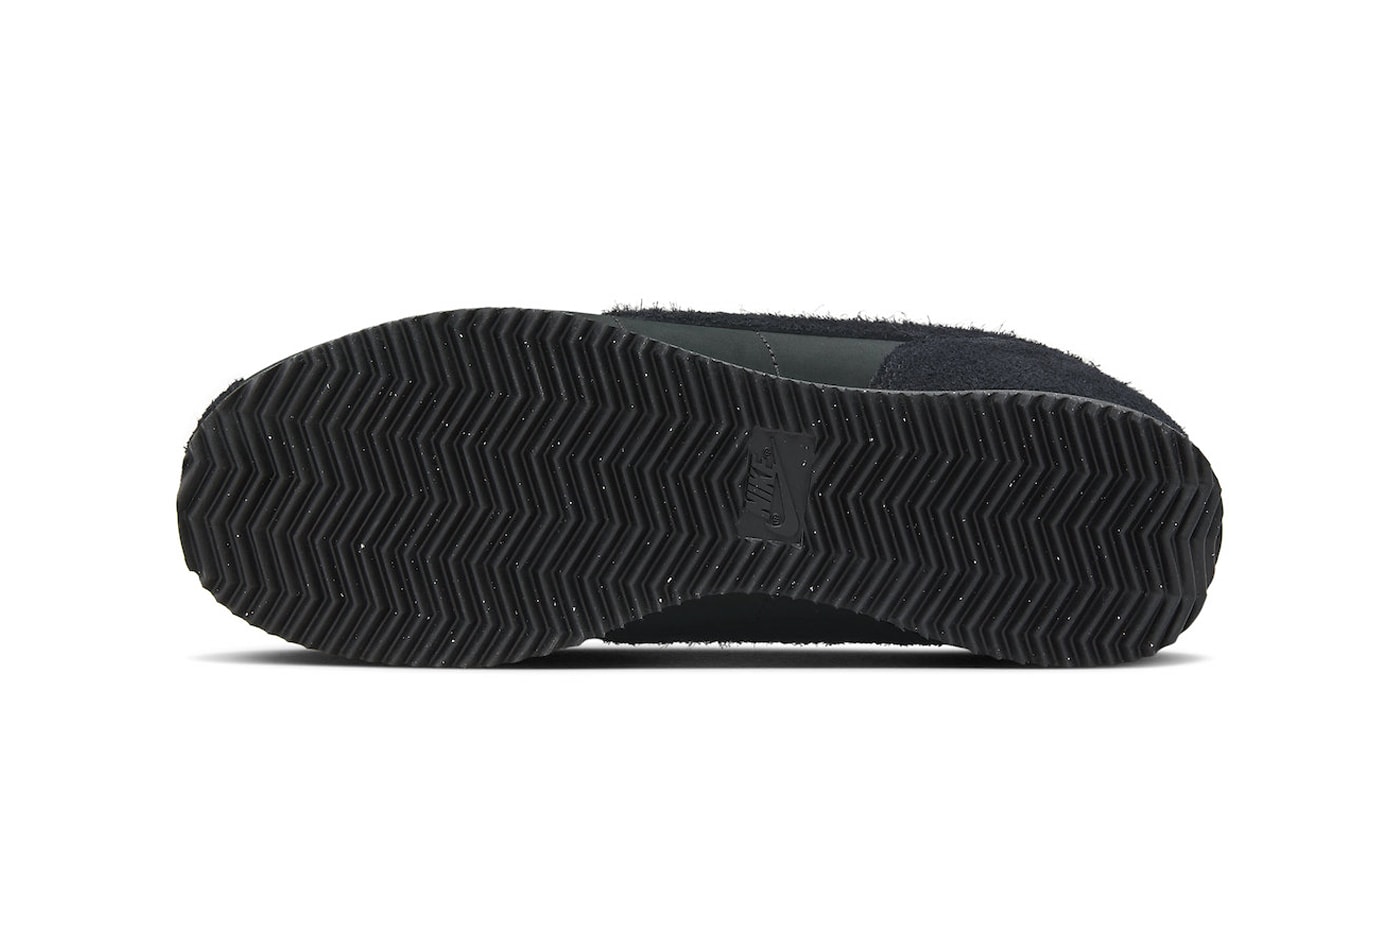 ナイキ コルテッツからシックな印象の最新作 “トリプル ブラック”が登場か Nike Cortez PRM Surfaces in "Triple Black" and Shaggy Suede Details release info premium